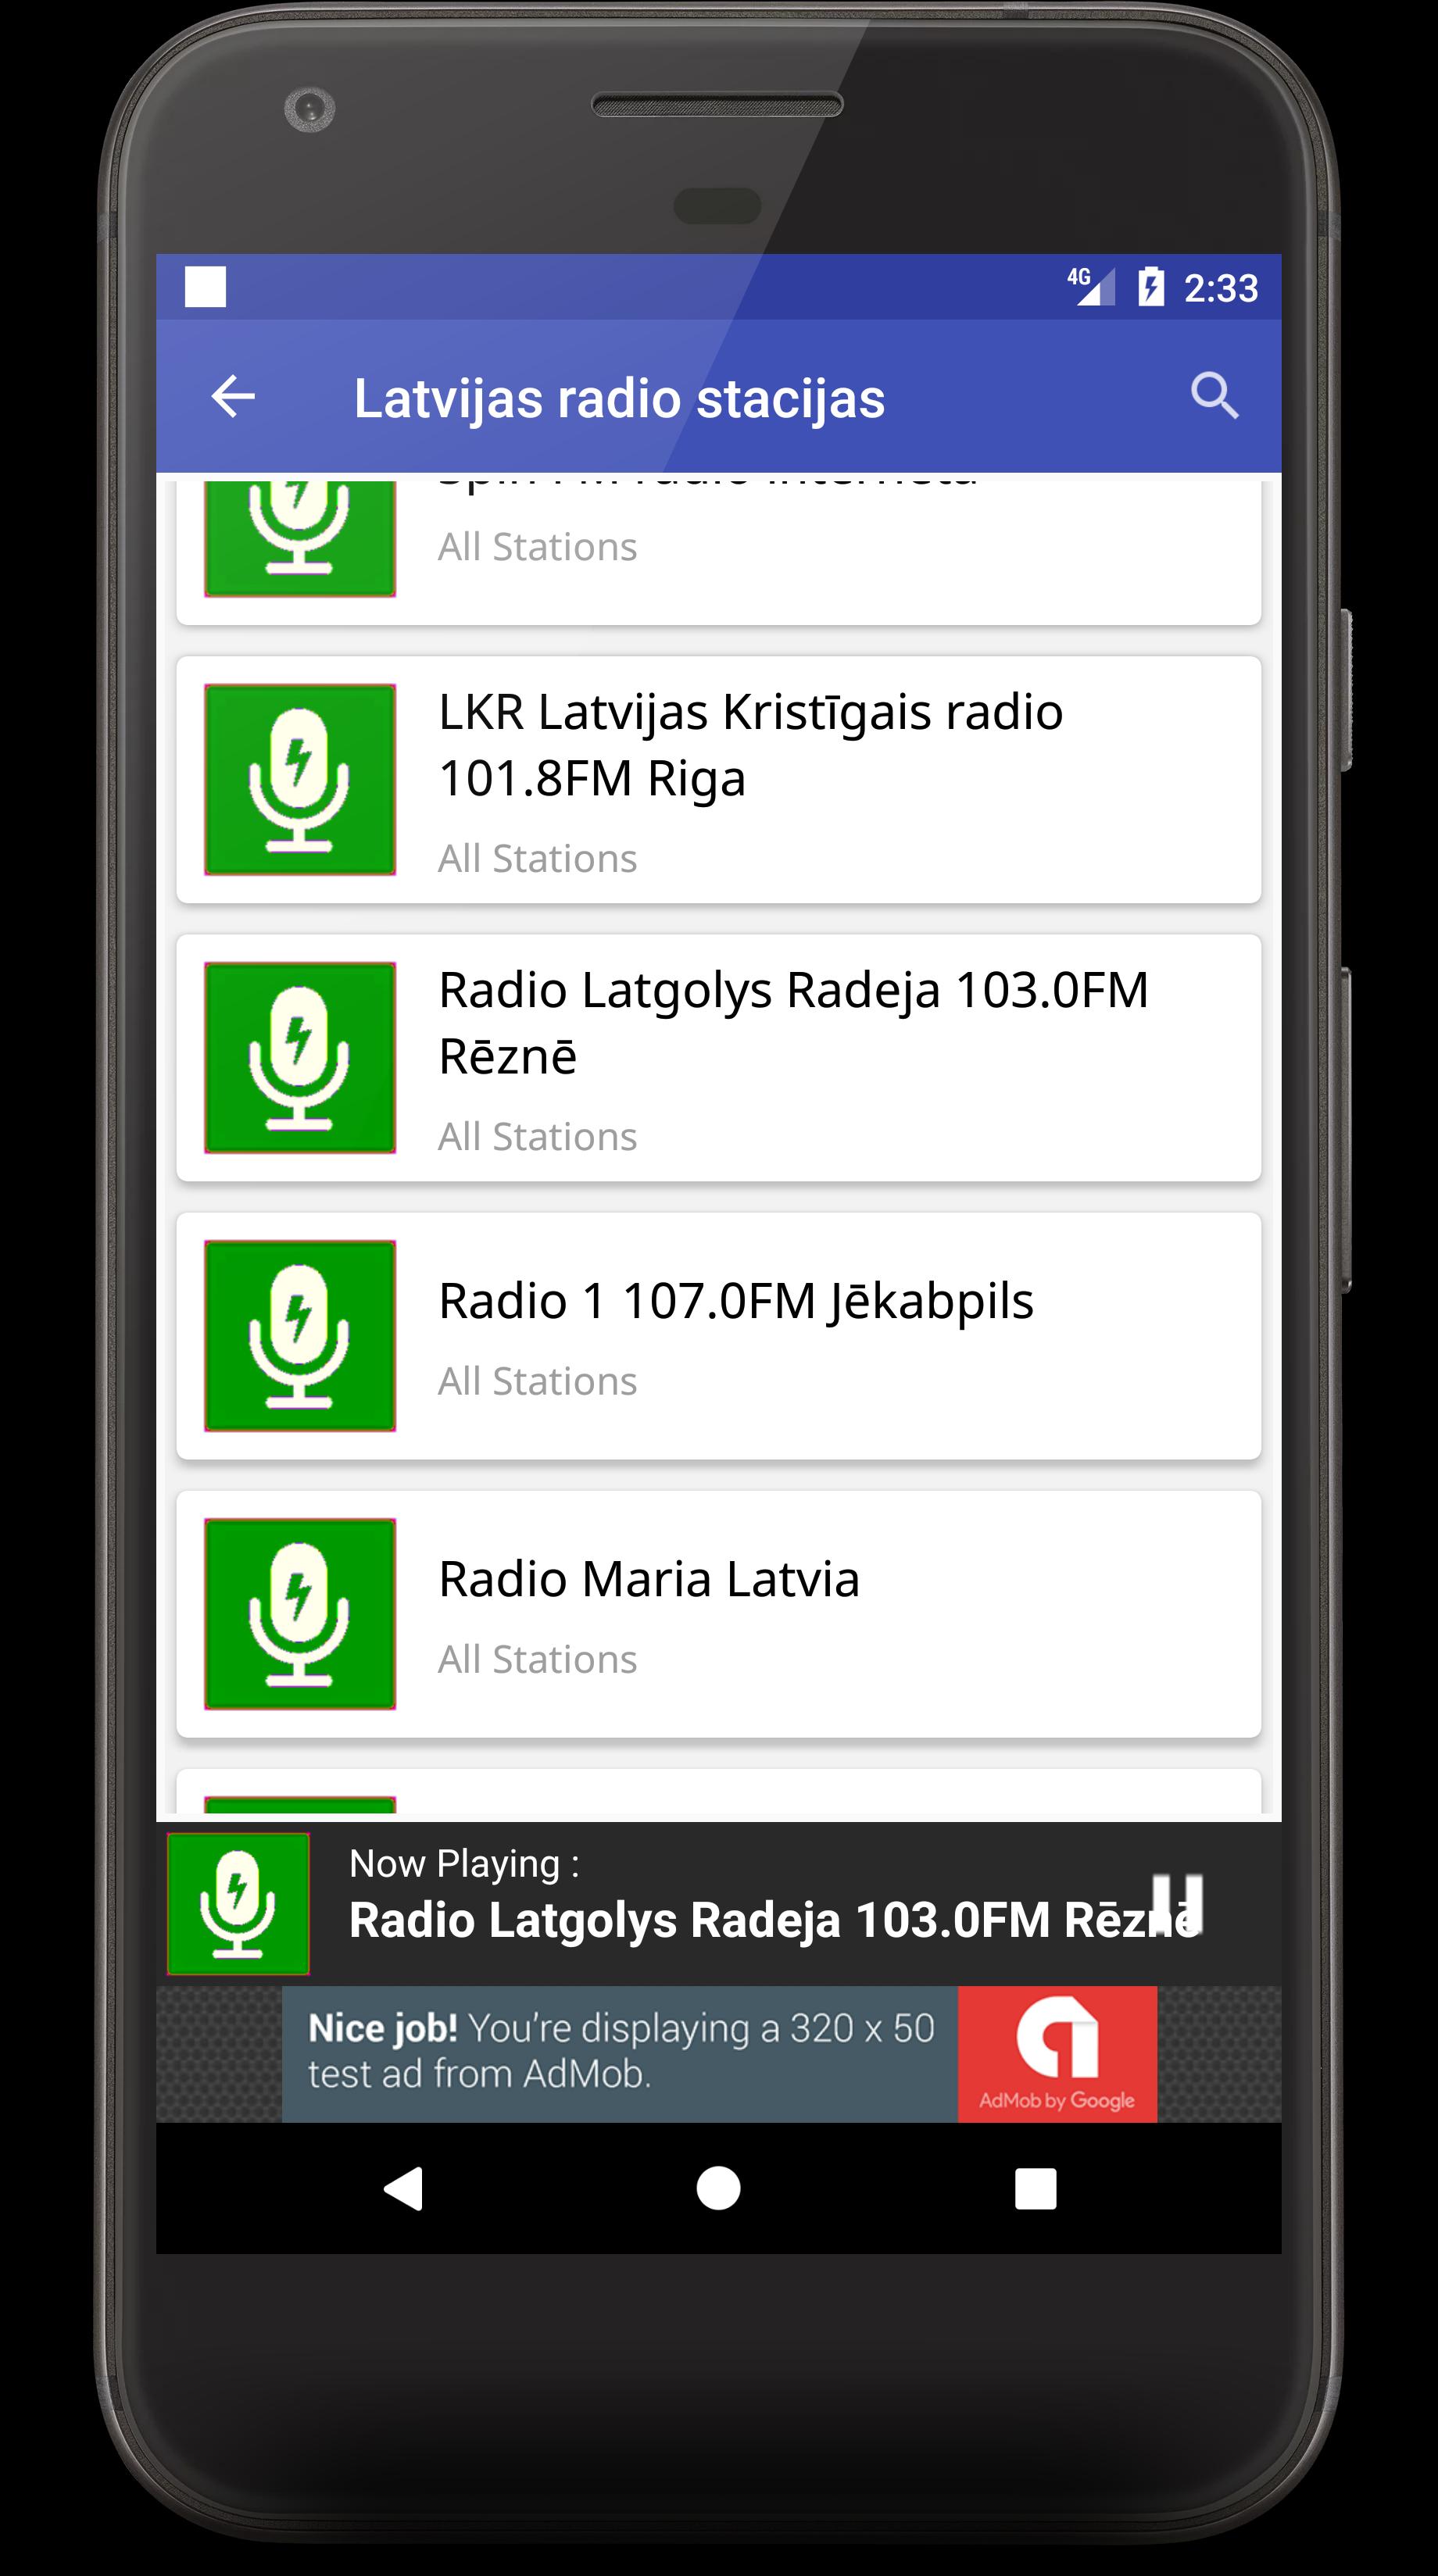 Latvijas radio stacijas for Android - APK Download